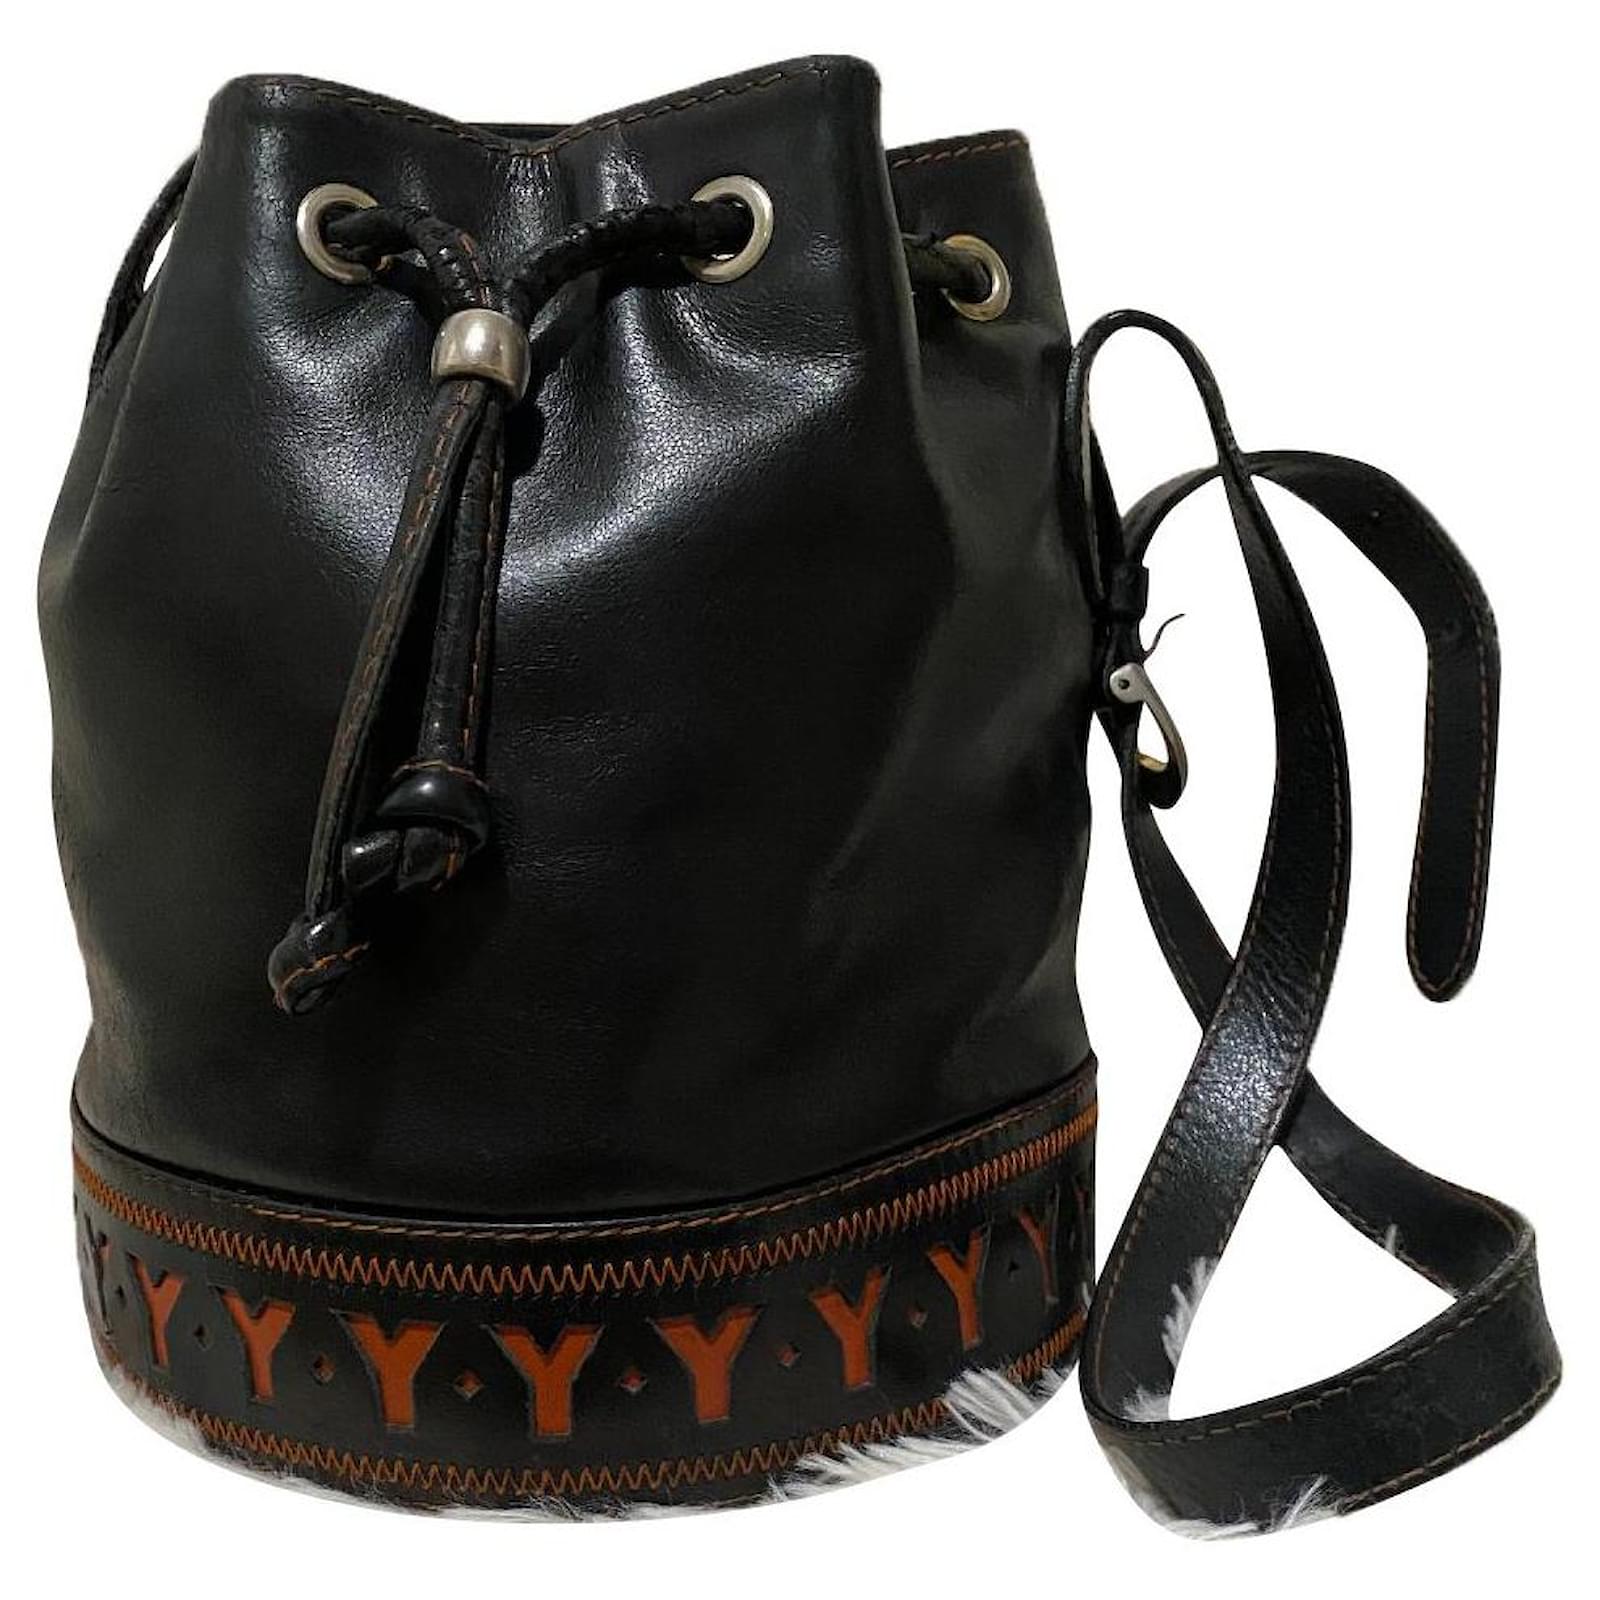 Yves Saint Laurent Women's Bag - Black